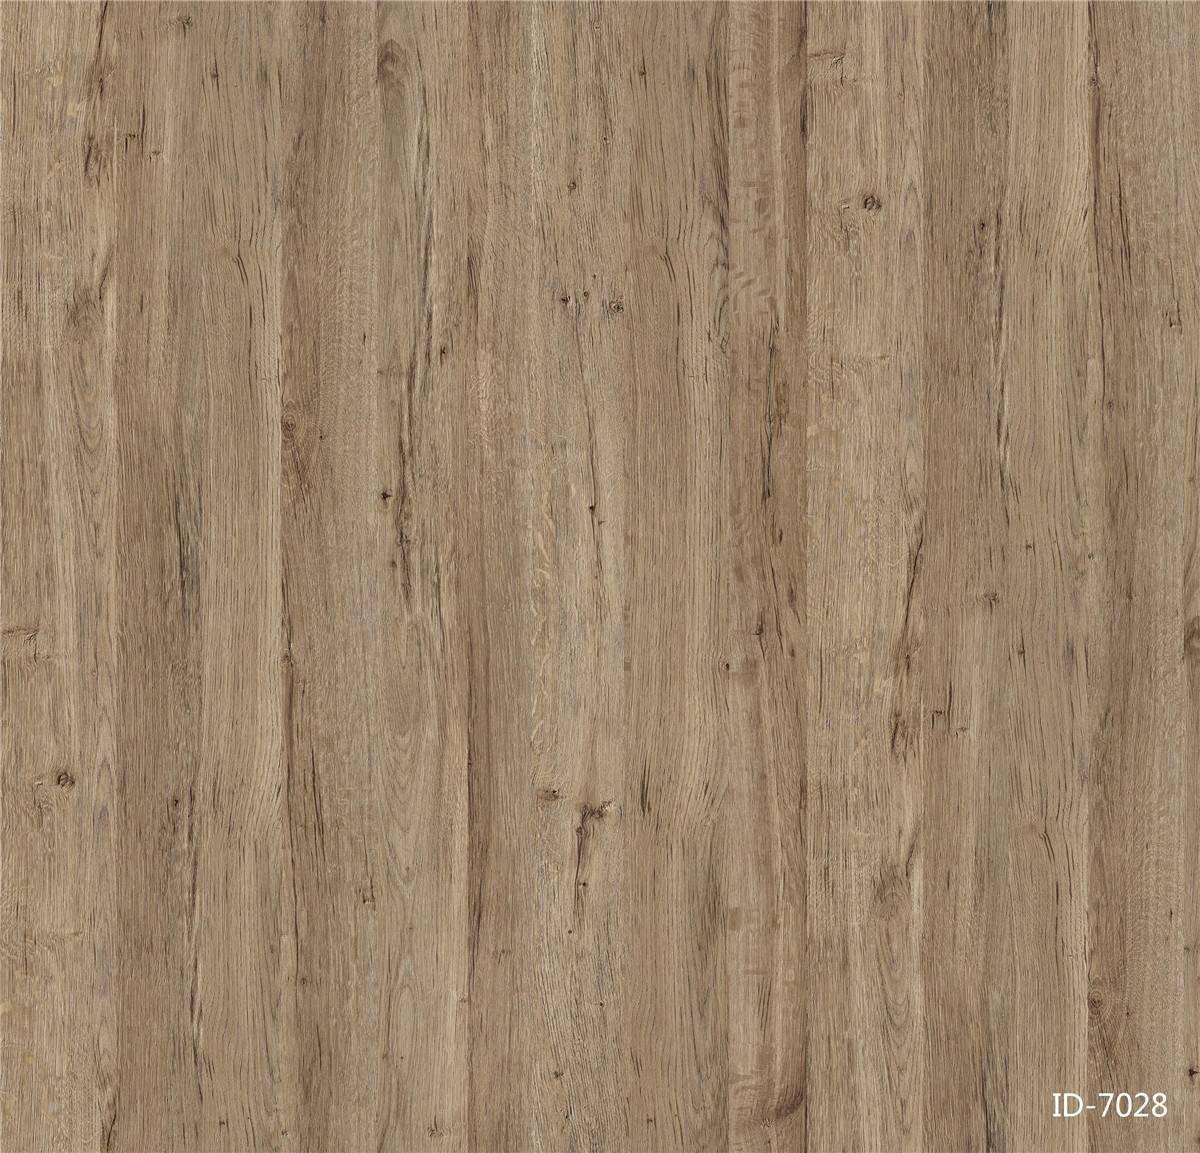 ID7028 decor paper oak idecor